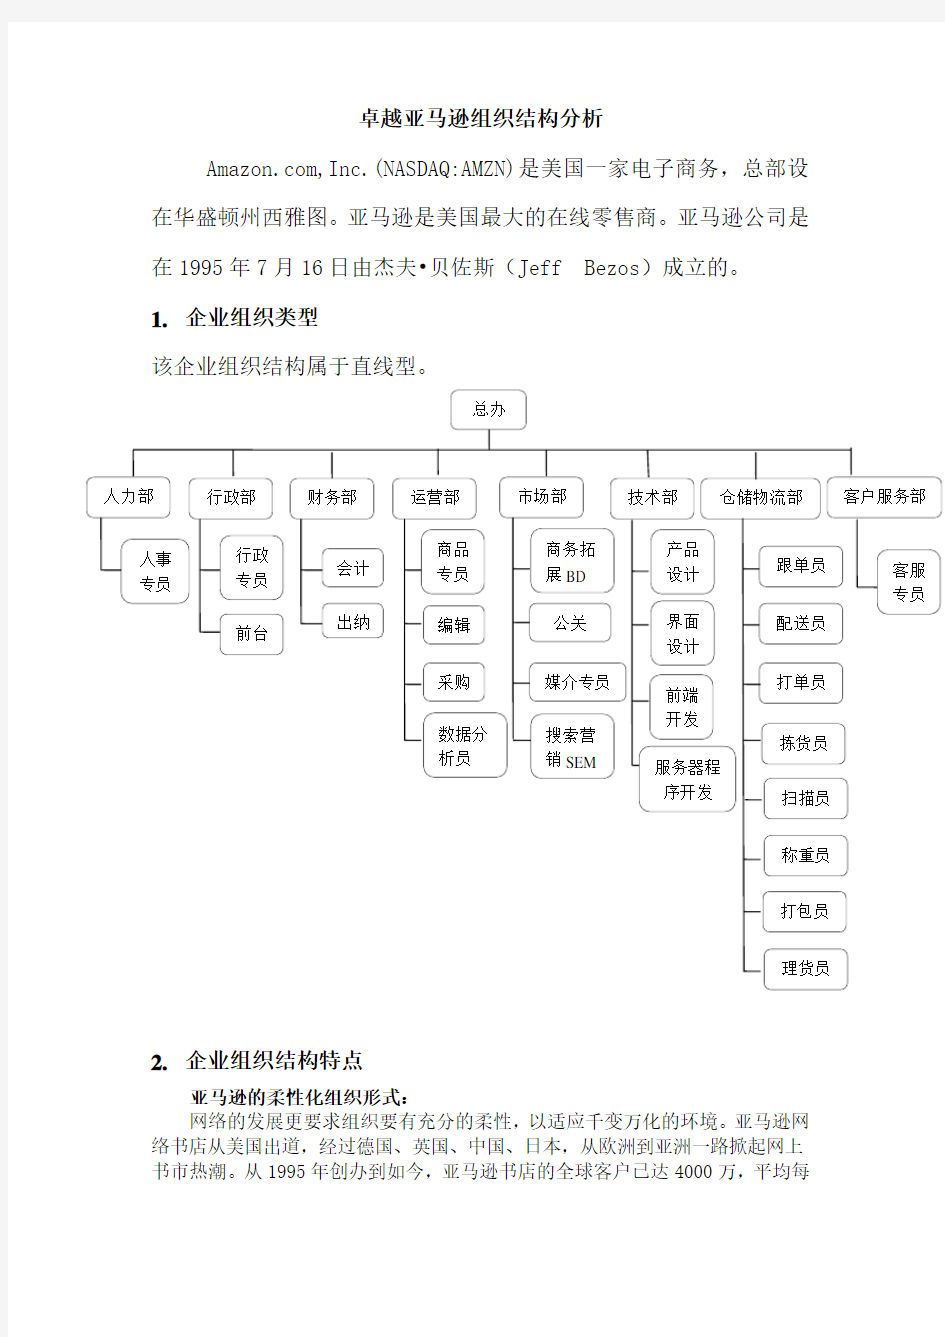 卓越亚马逊网站组织结构分析(晓)